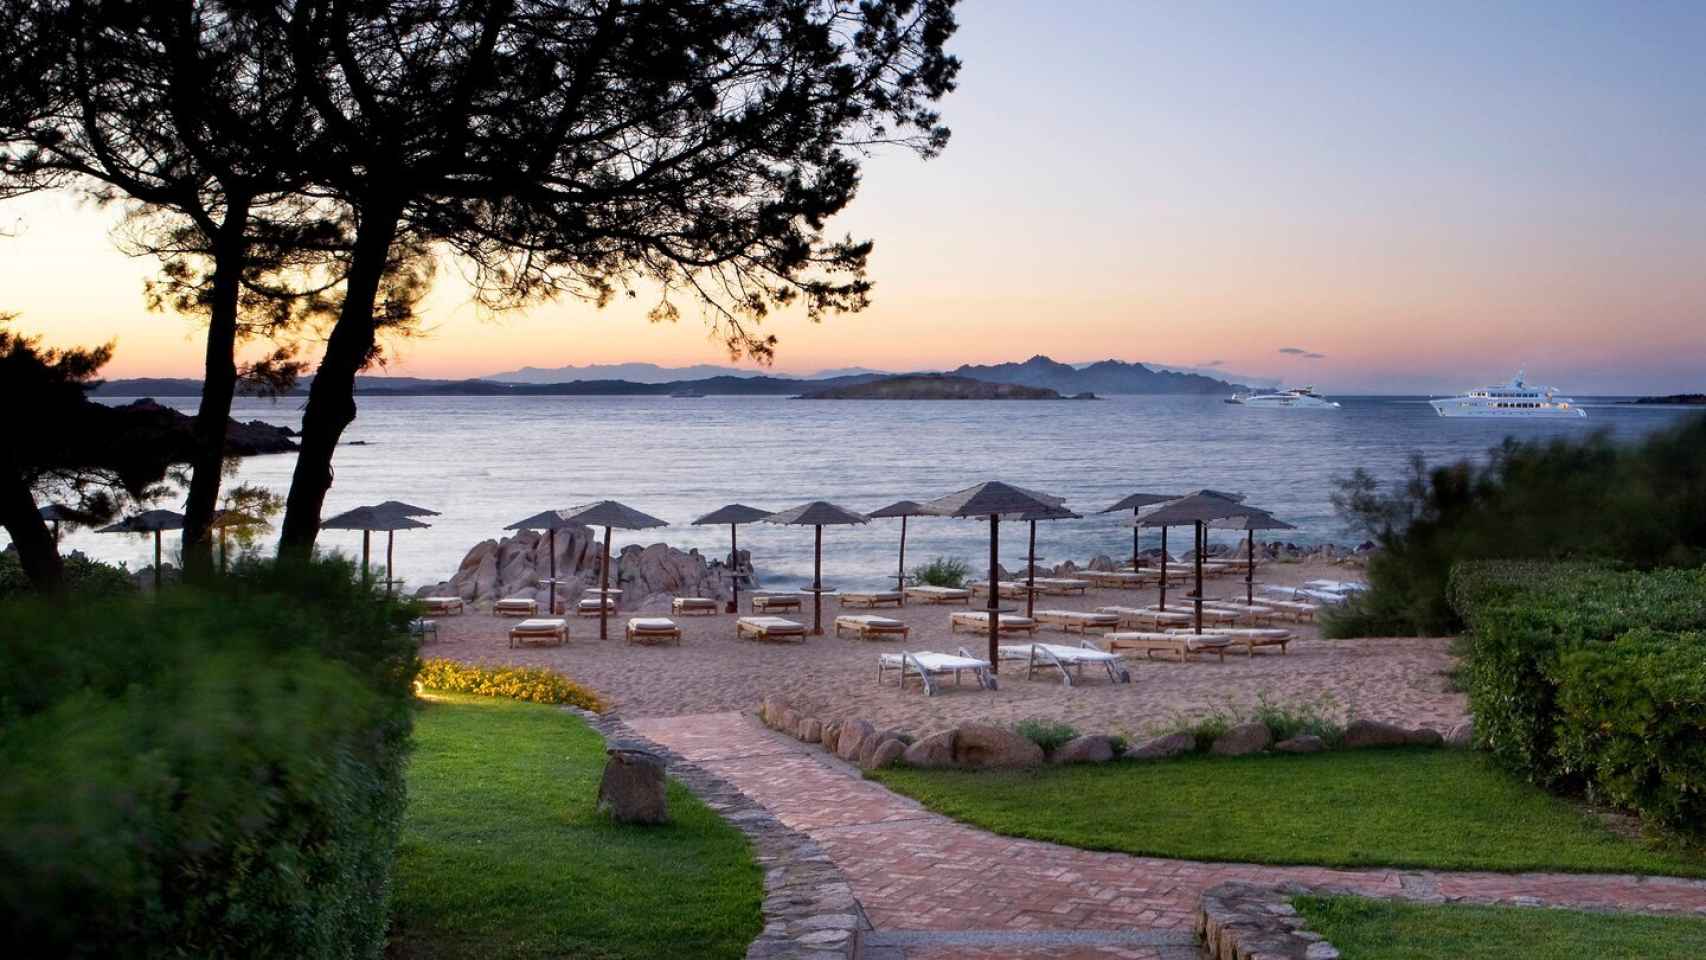 El hotel cuenta con su propia playa privada, para que los clientes puedan descansar sin salir del complejo.